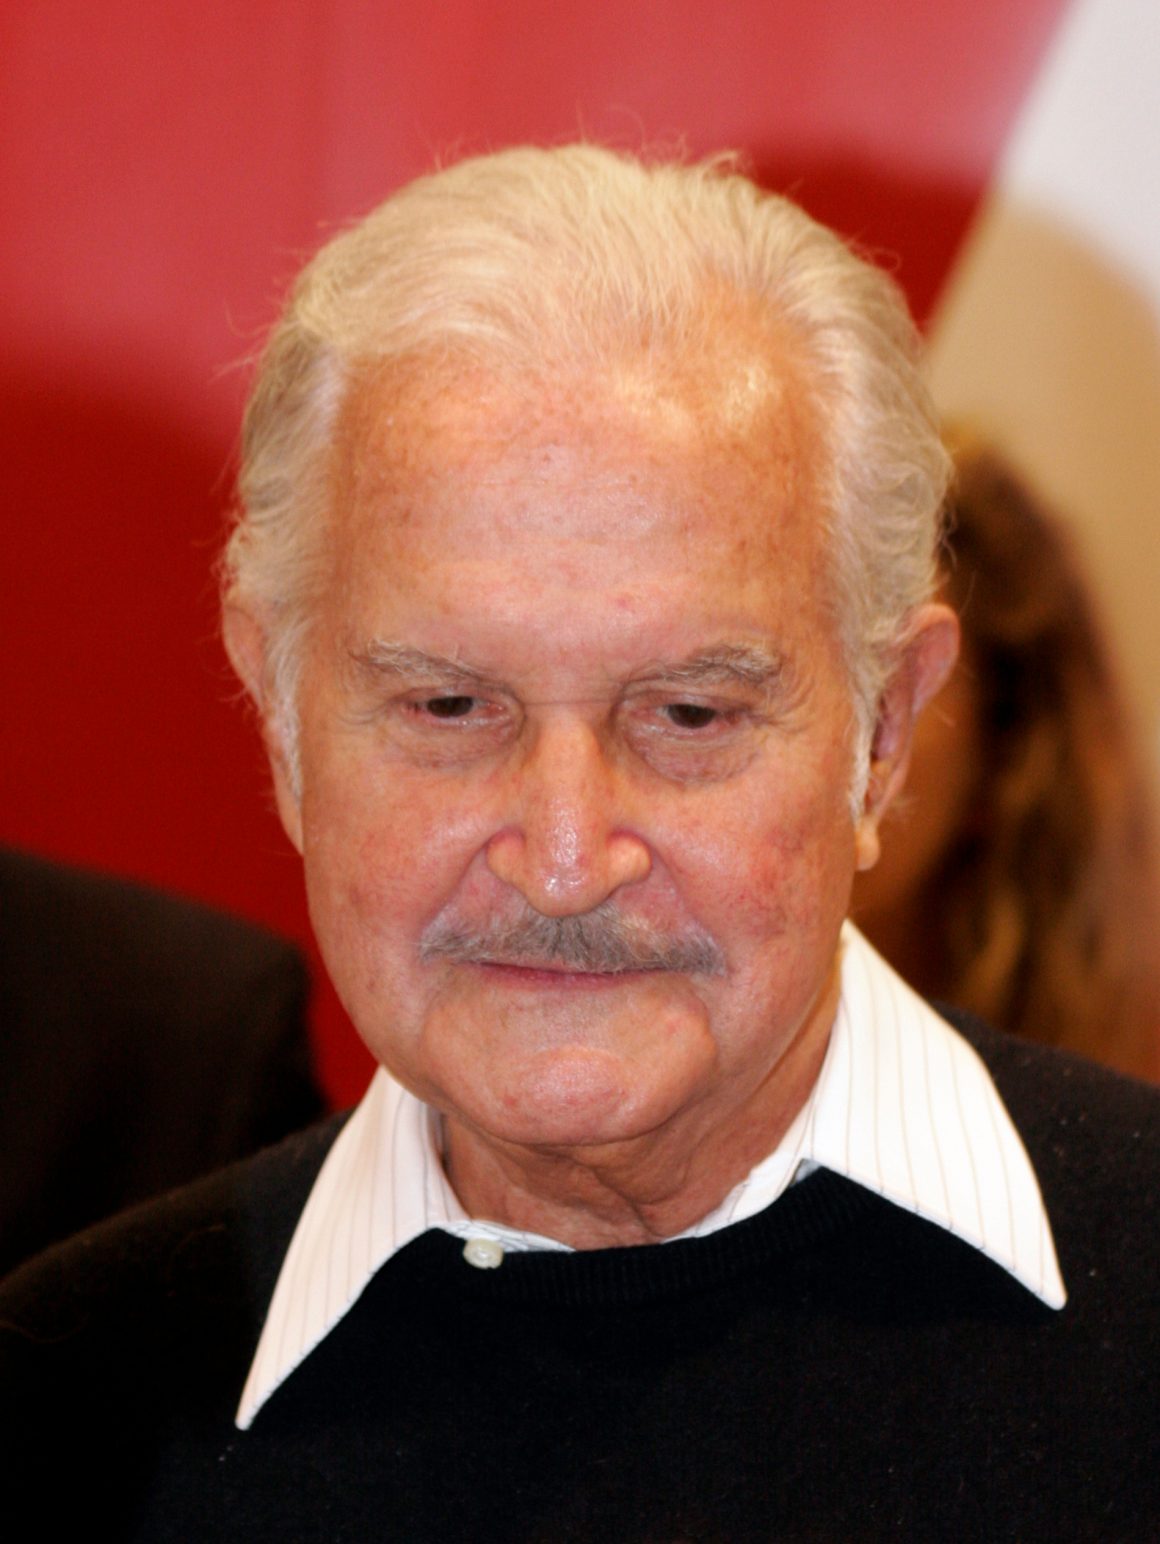 La campaña de Carlos Fuentes